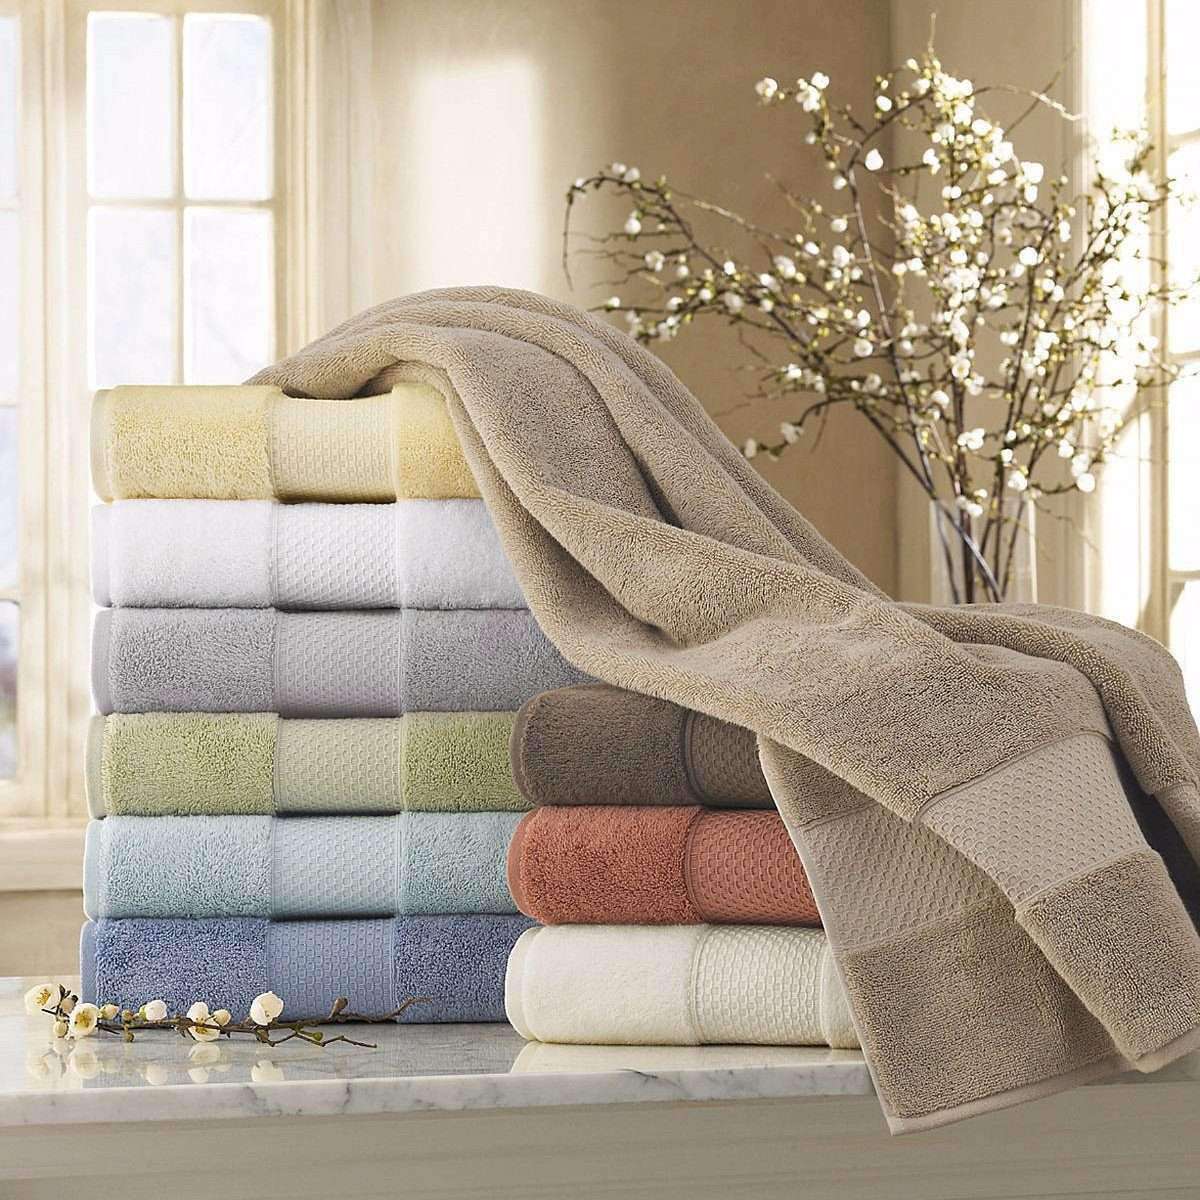 Махровое полотенце постельное белье. Шикарное полотенце. Текстиль для дома. Постельное белье и полотенца. Текстиль полотенца.